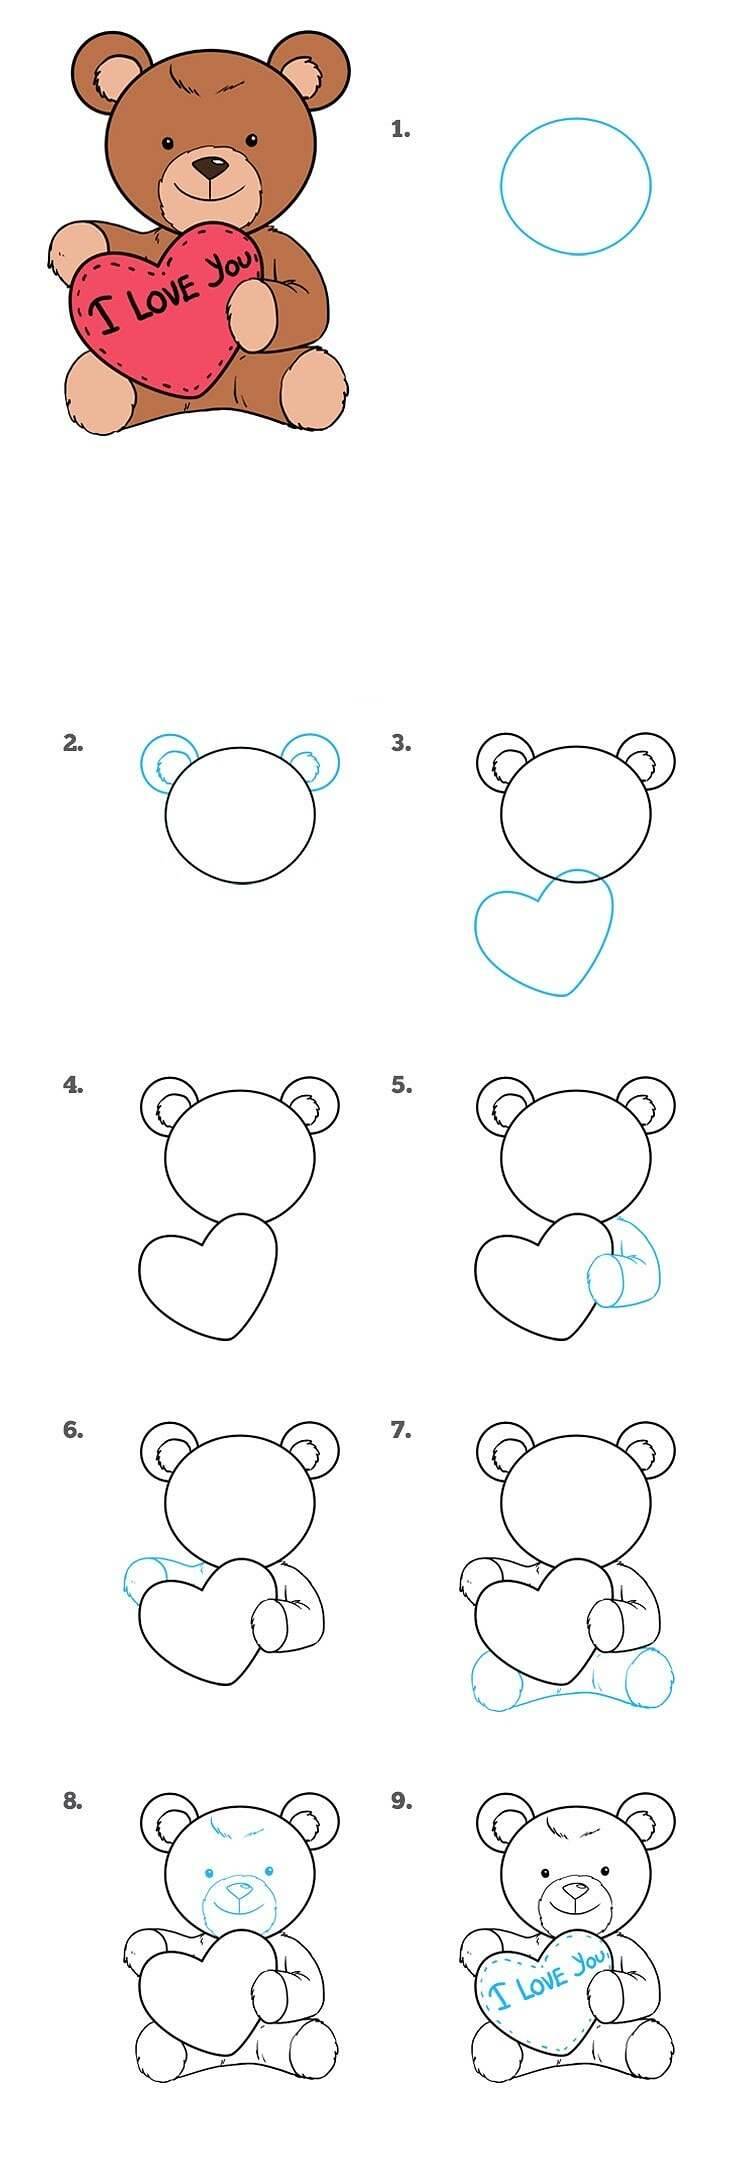 Как нарисовать мишку Тедди